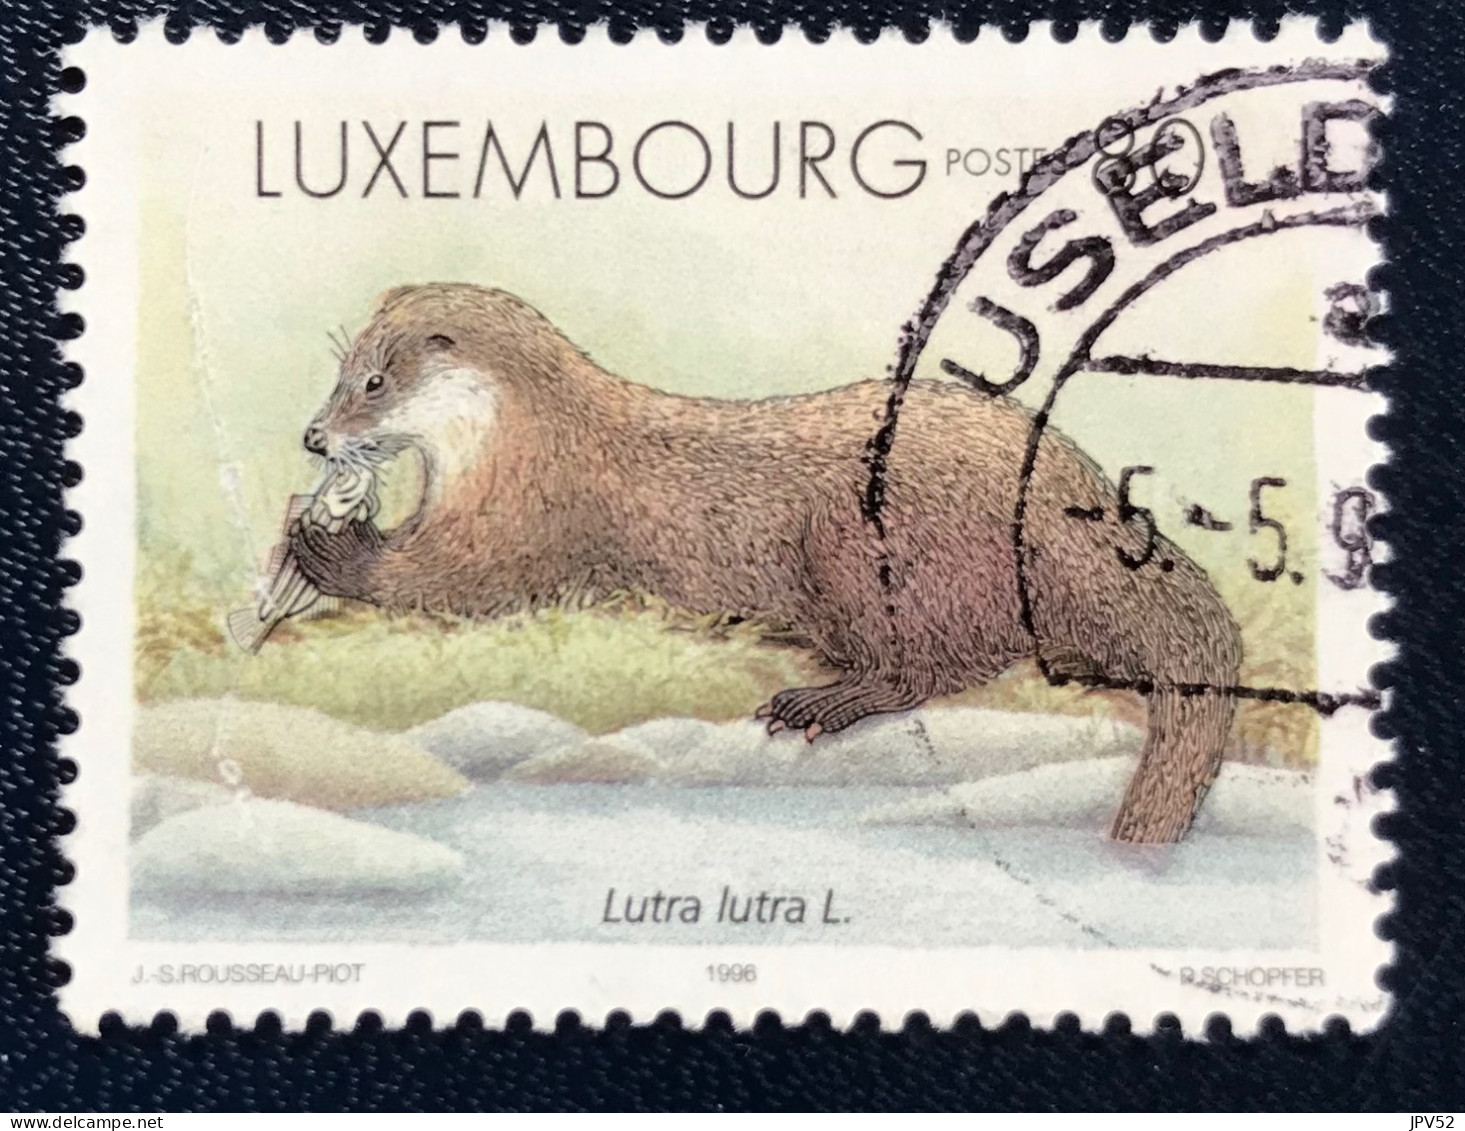 Luxembourg - Luxemburg - C18/32 - 1996 - (°)used - Michel 1402 - Pelsdieren - Gebraucht